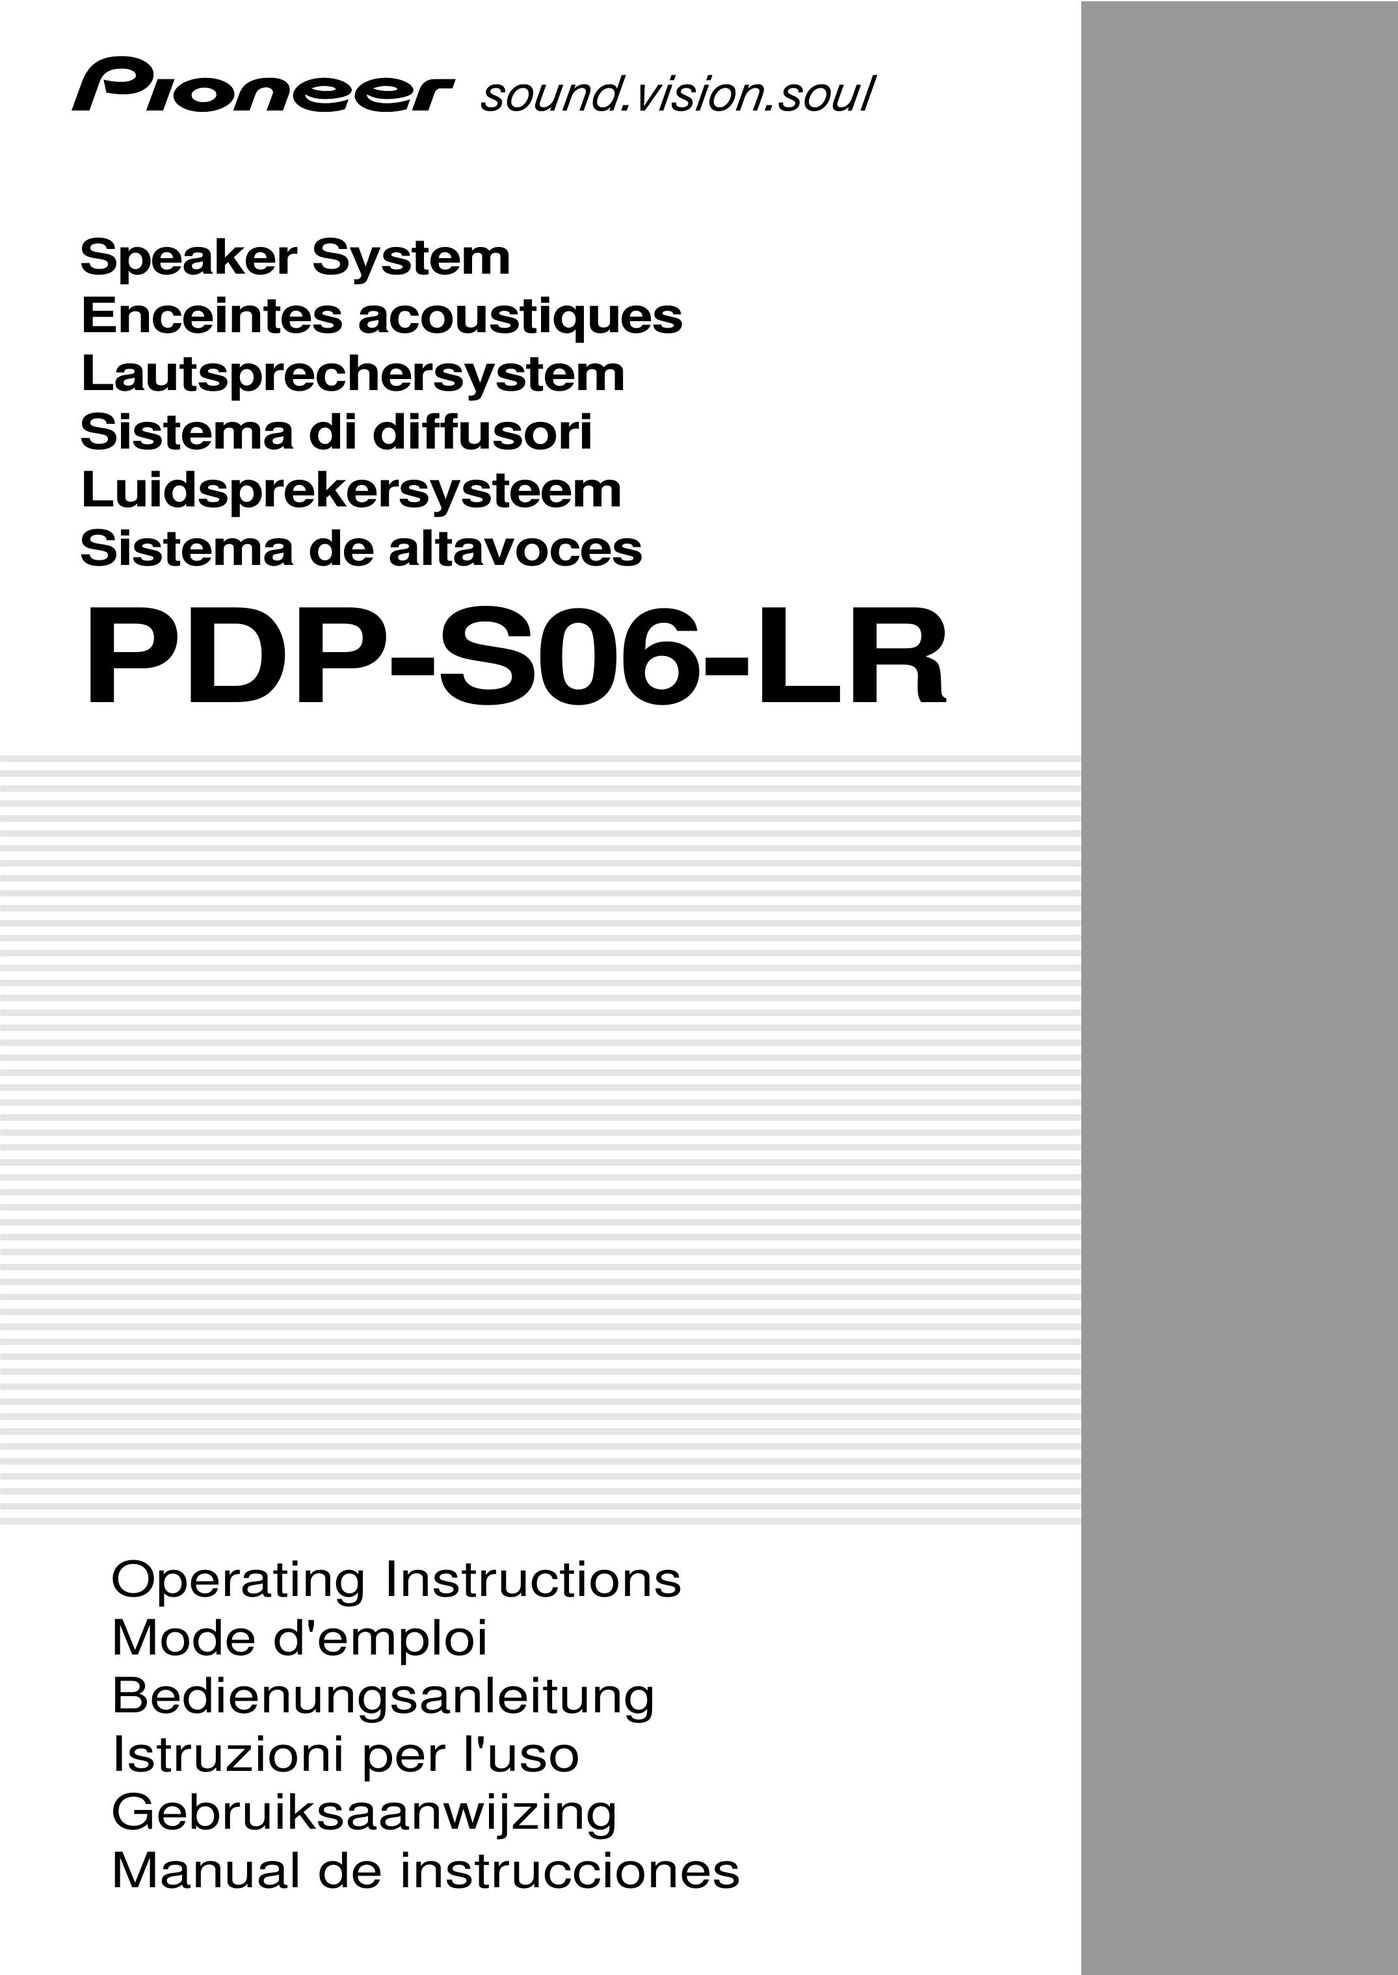 Pioneer PDP-S06-LR Portable Speaker User Manual